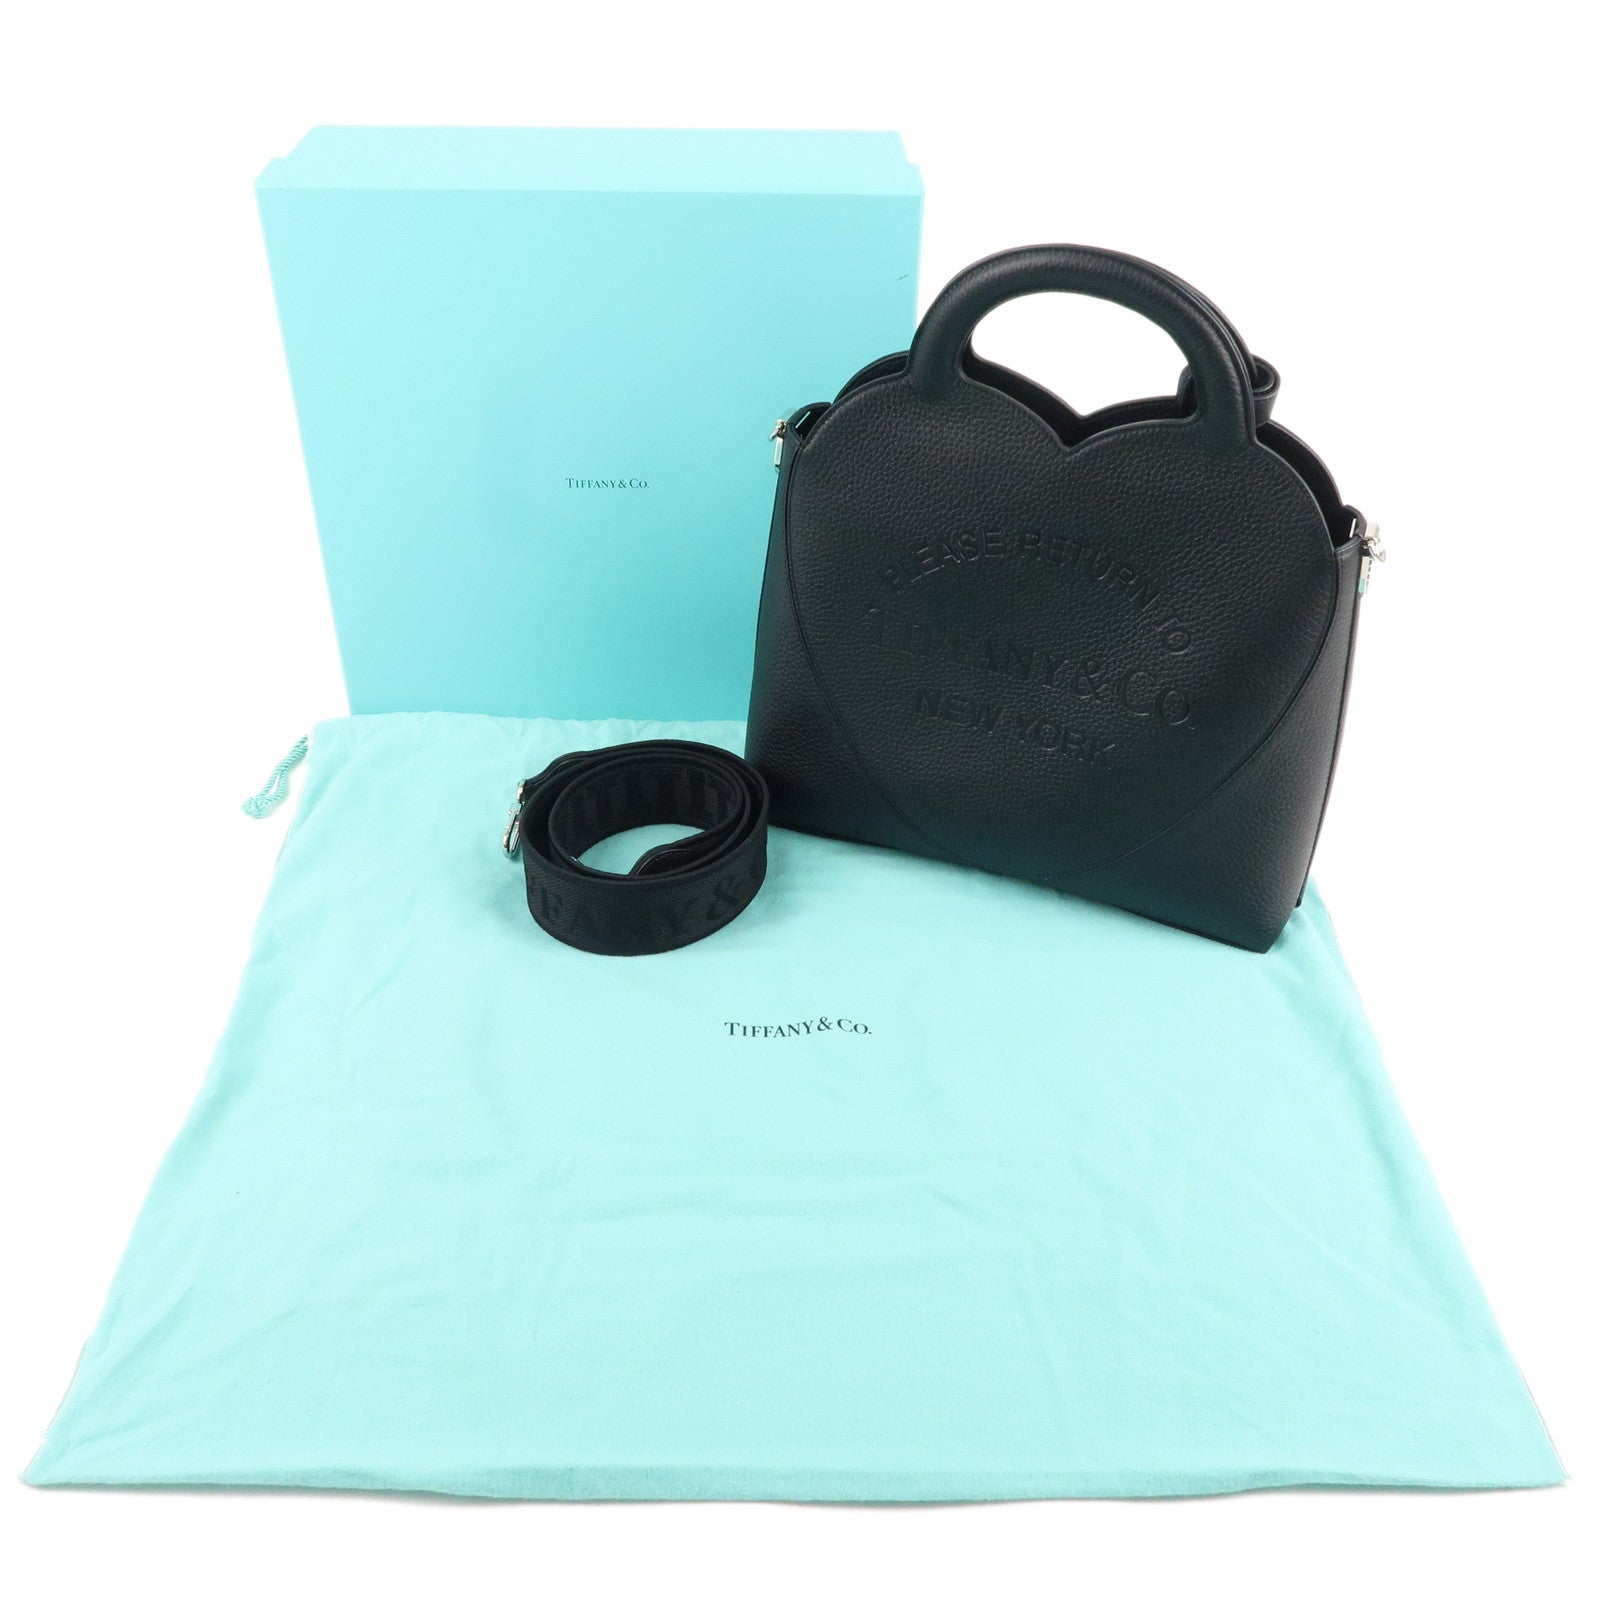 Tiffany & Co. Return to Tiffany 2way Heart Mini Crossbody Bag